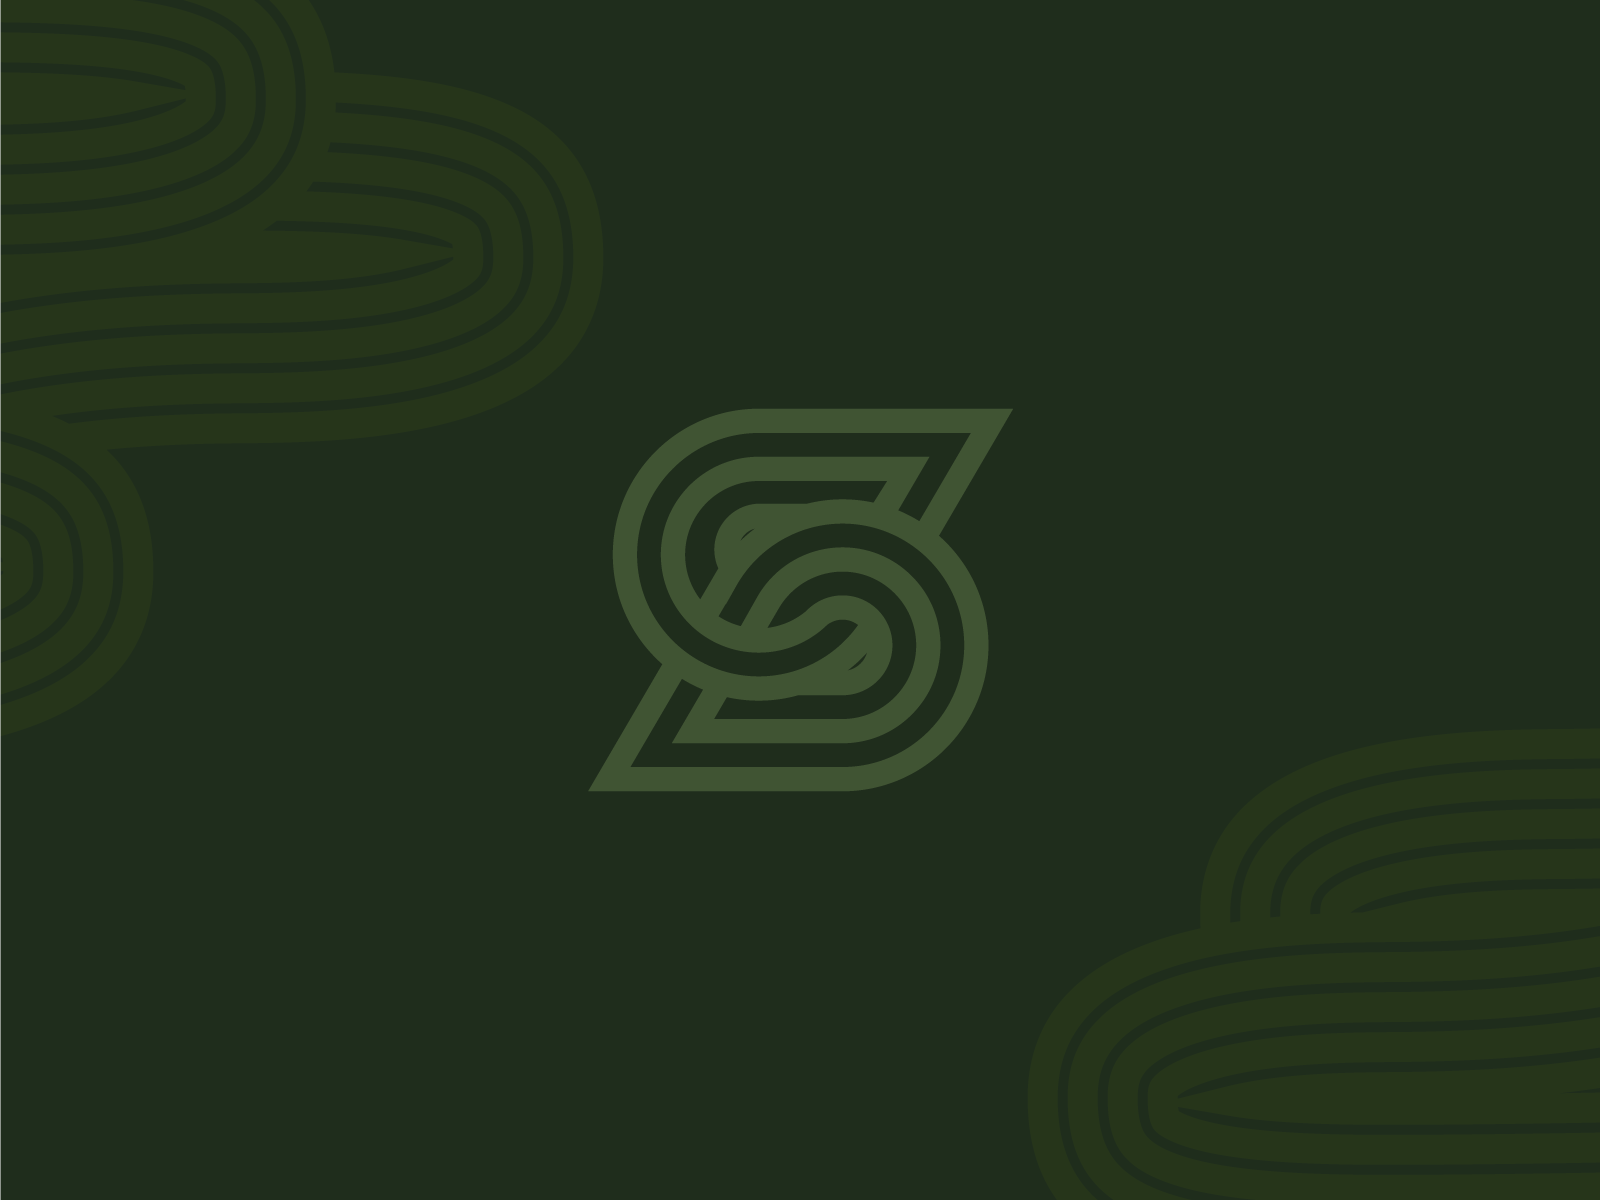 S monogram logo dark green leaf letter lines logo monochrome monogram